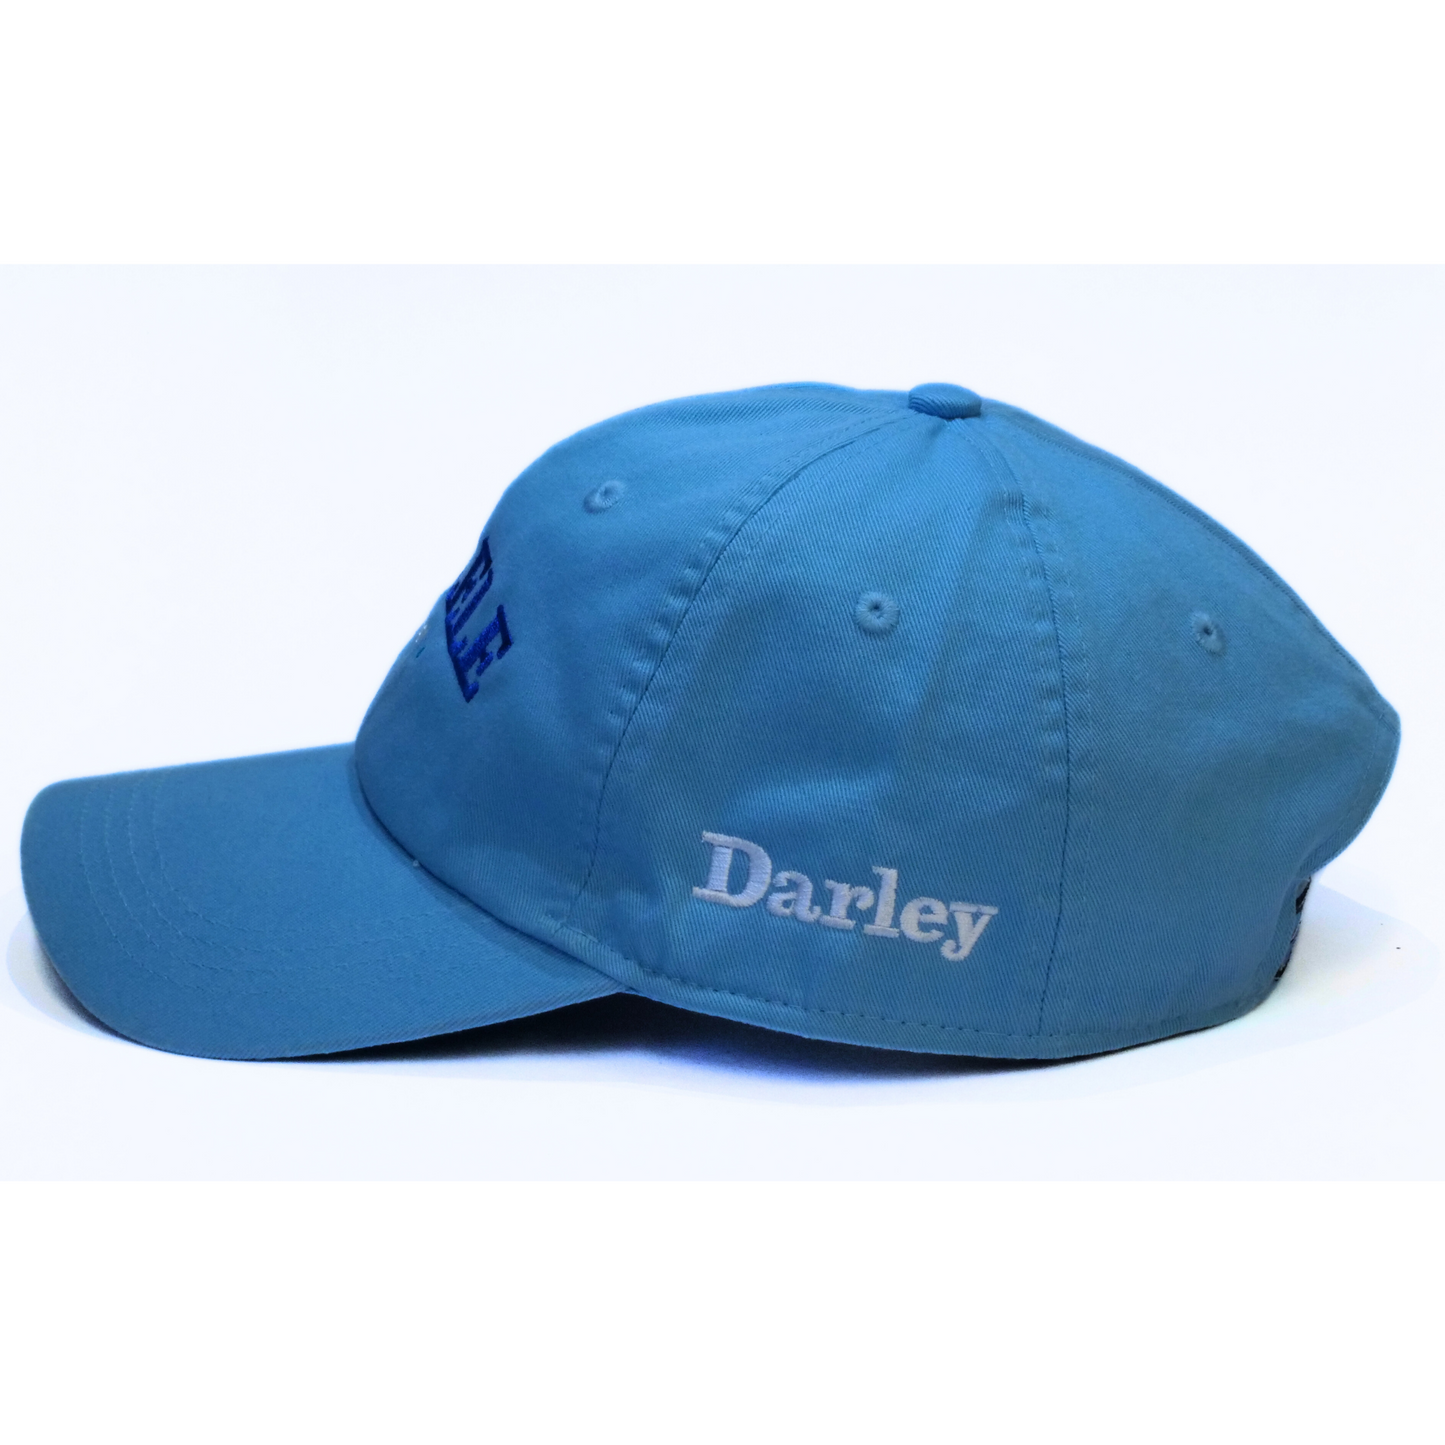 Paulele Baseball Cap - Darley